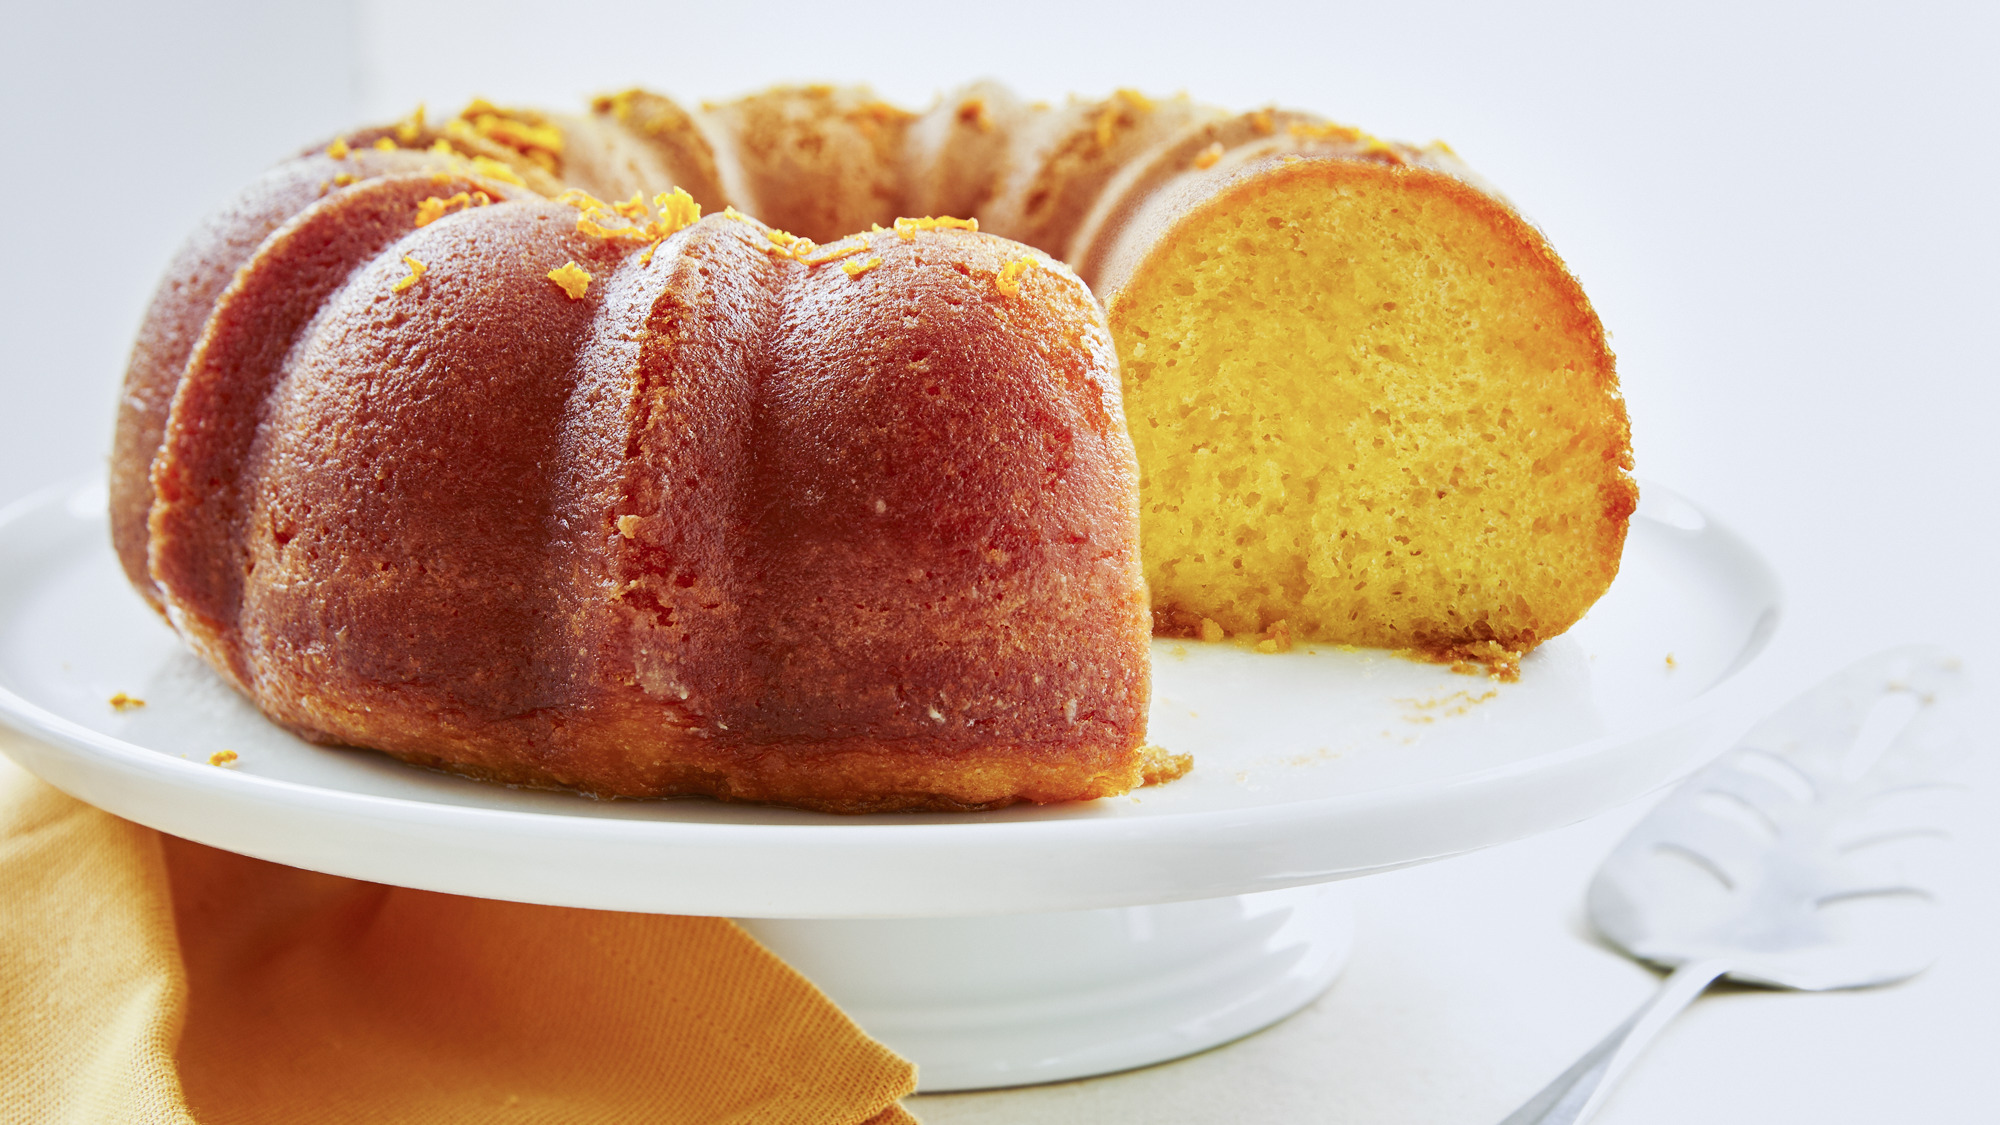 Torte Cake – Here's the Dish